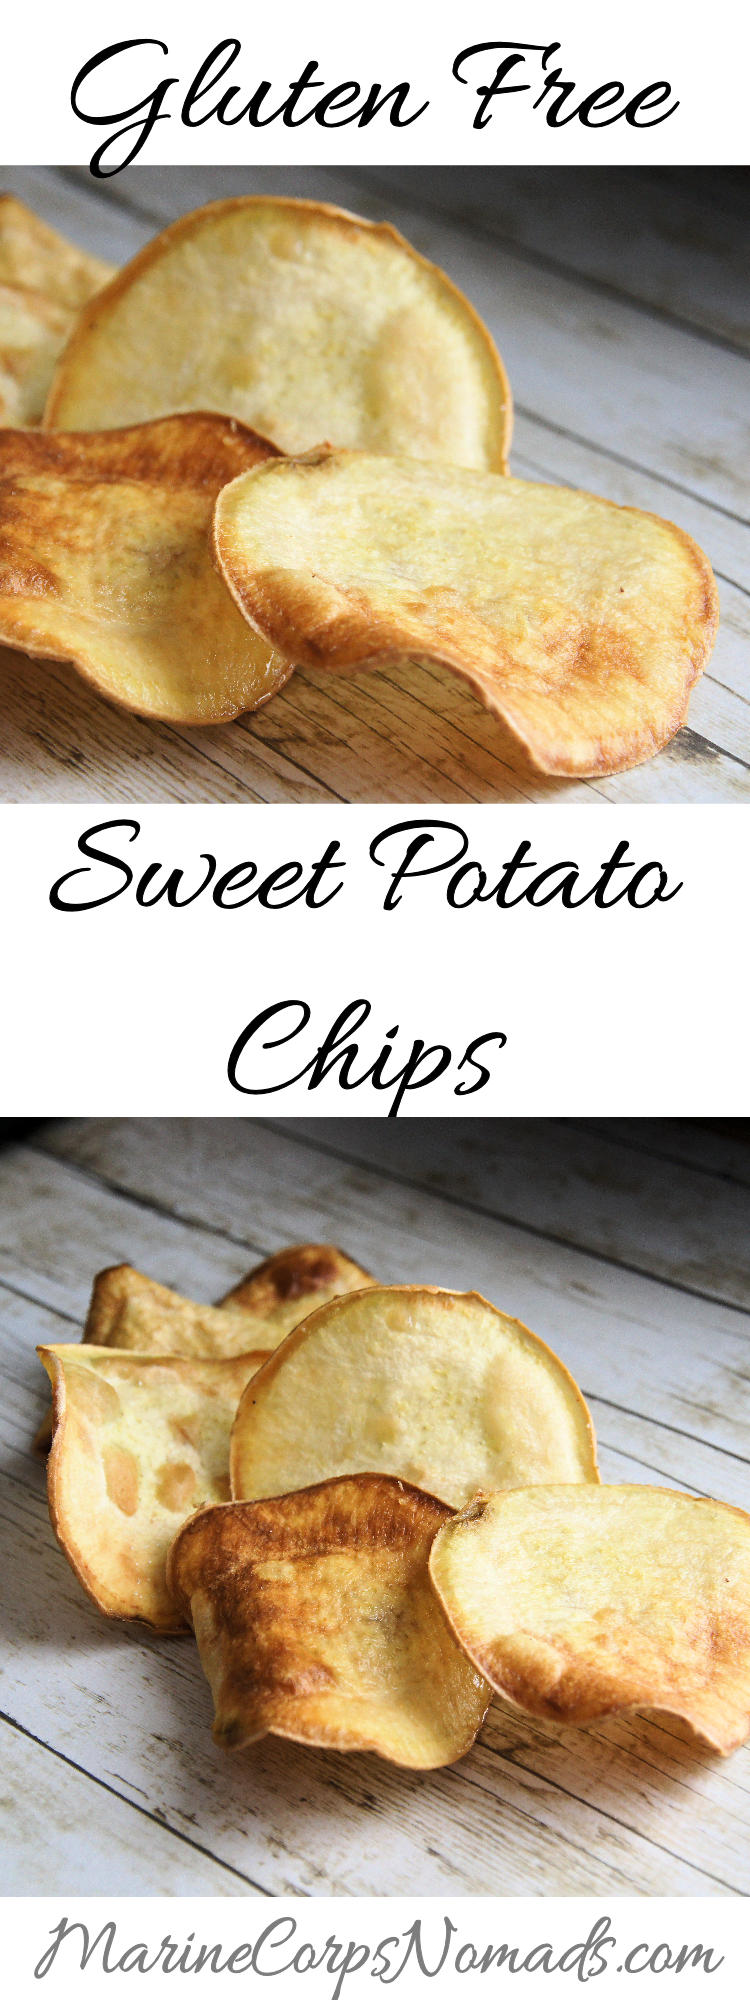 Homemade Gluten Free Sweet Potato Chips | Snacks | Marine Corps Nomads